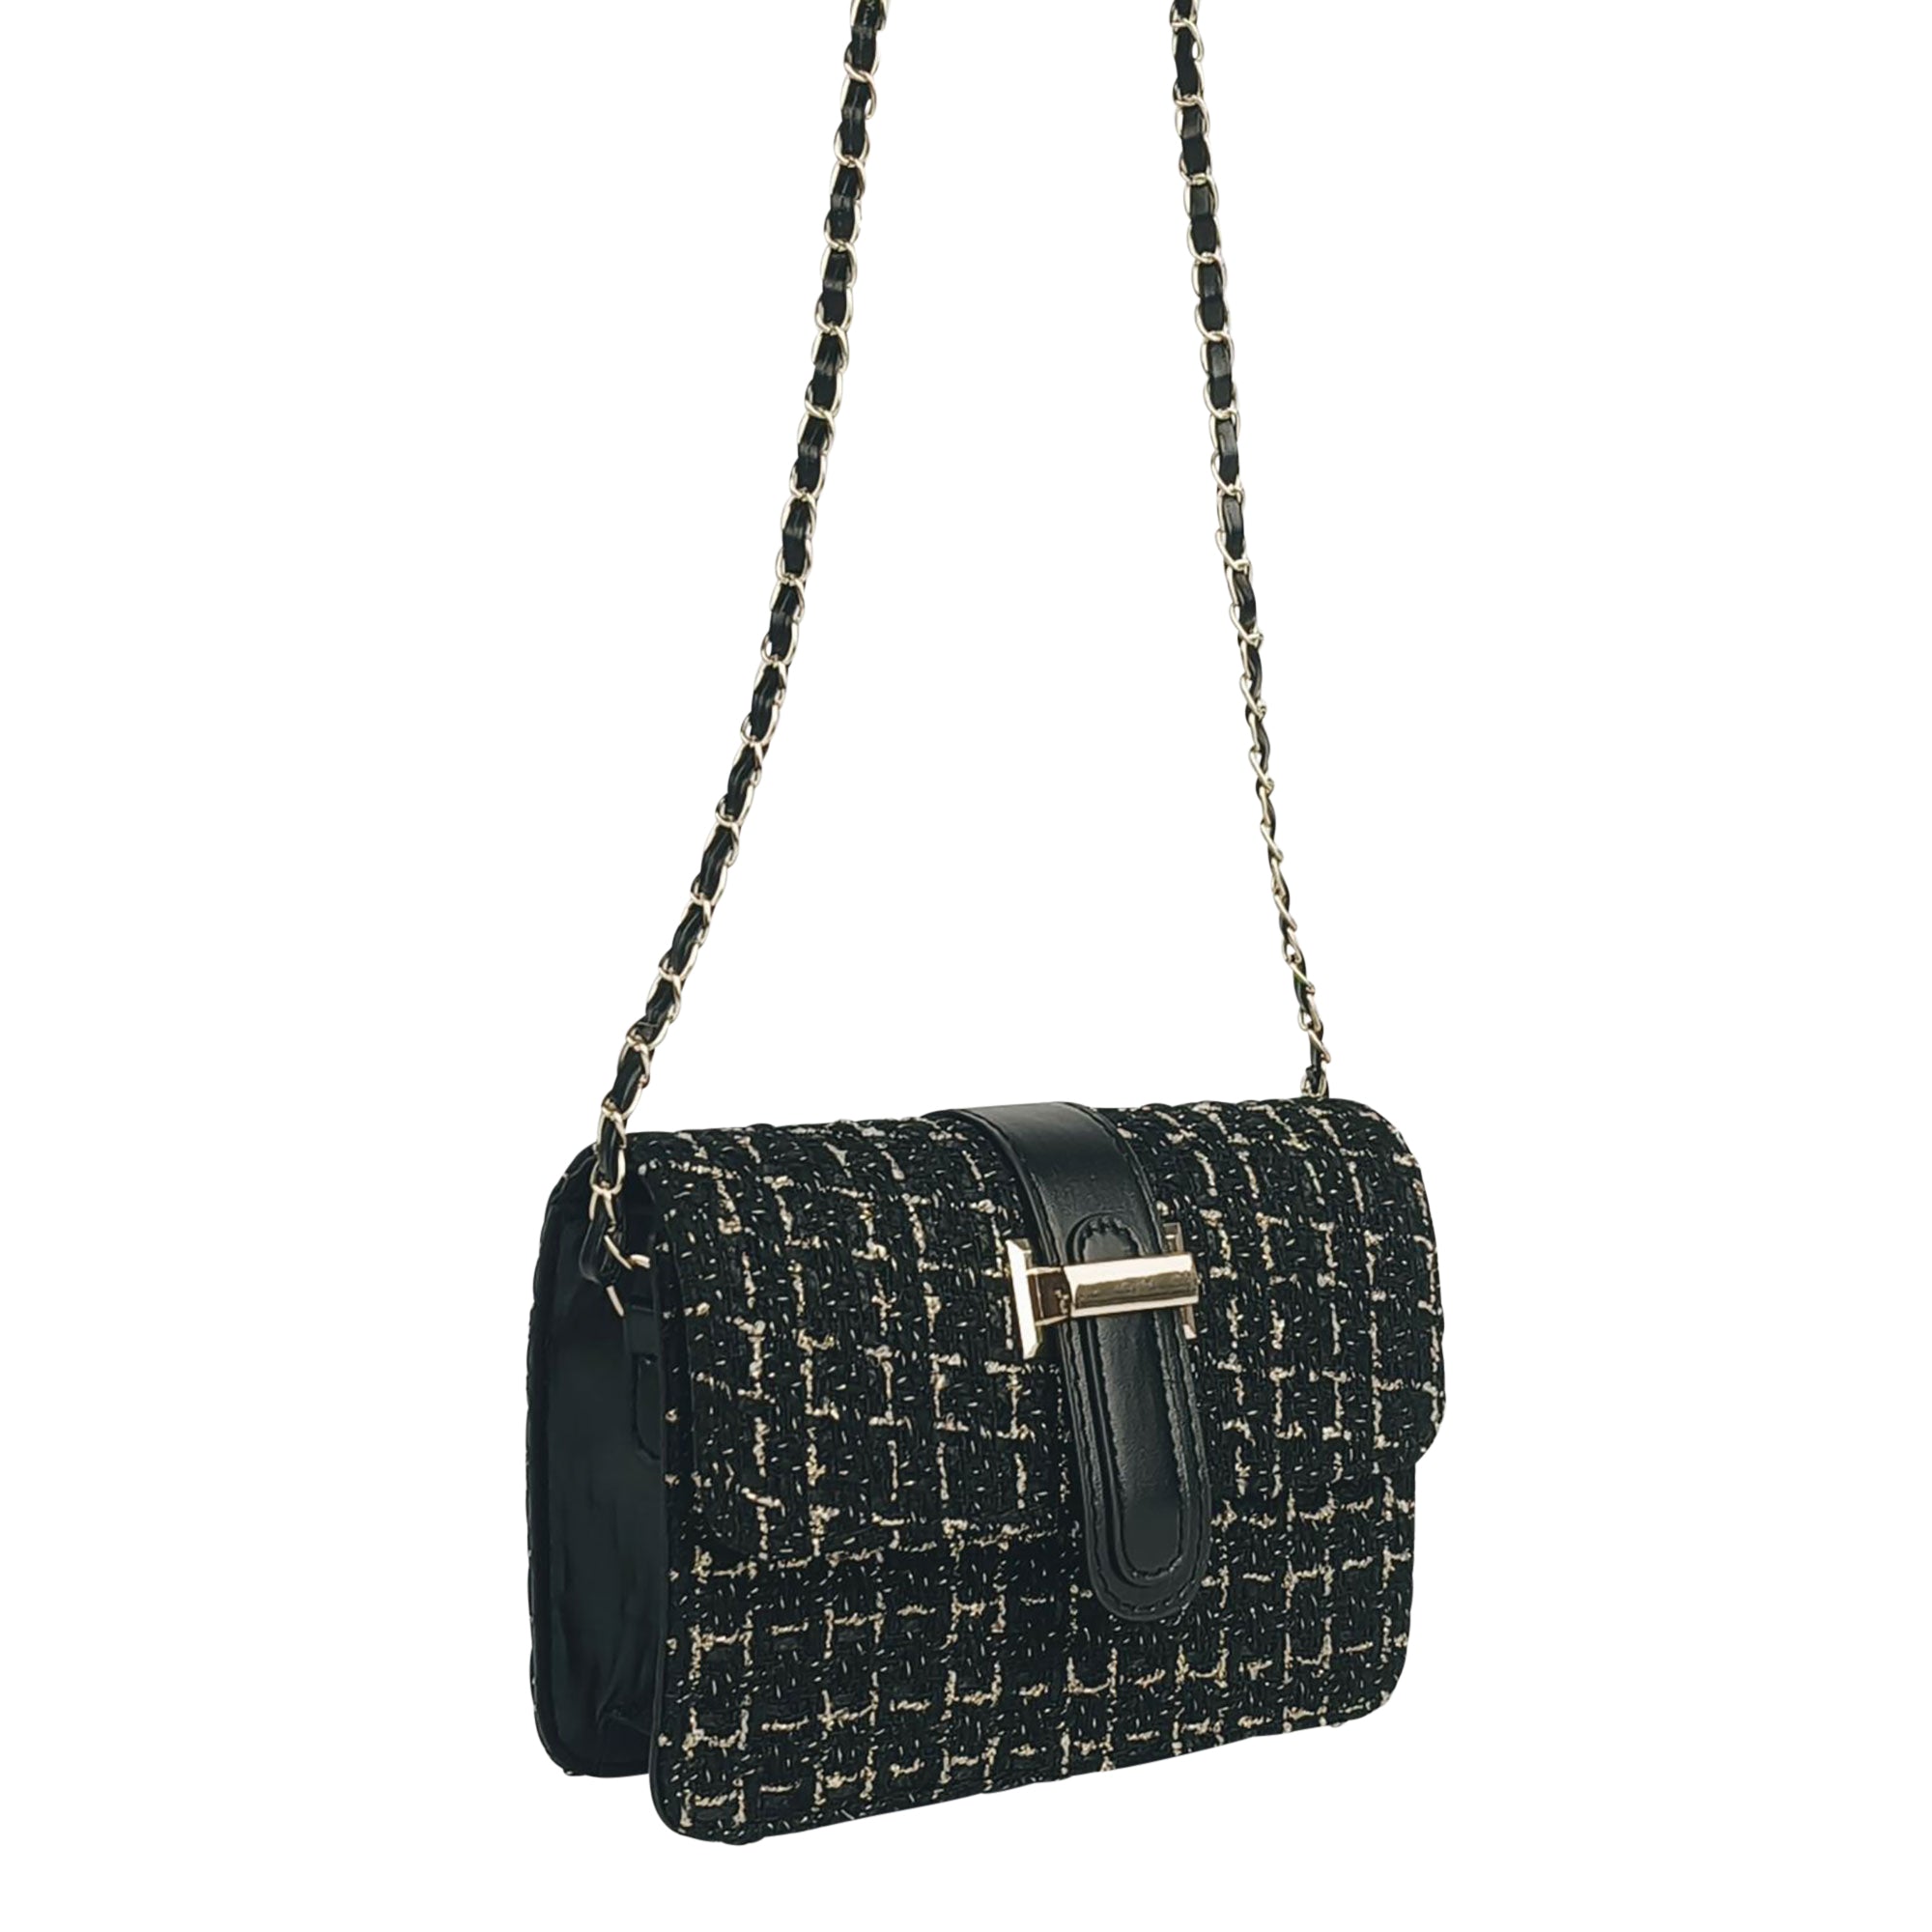 Black Fabric Evening Handbag